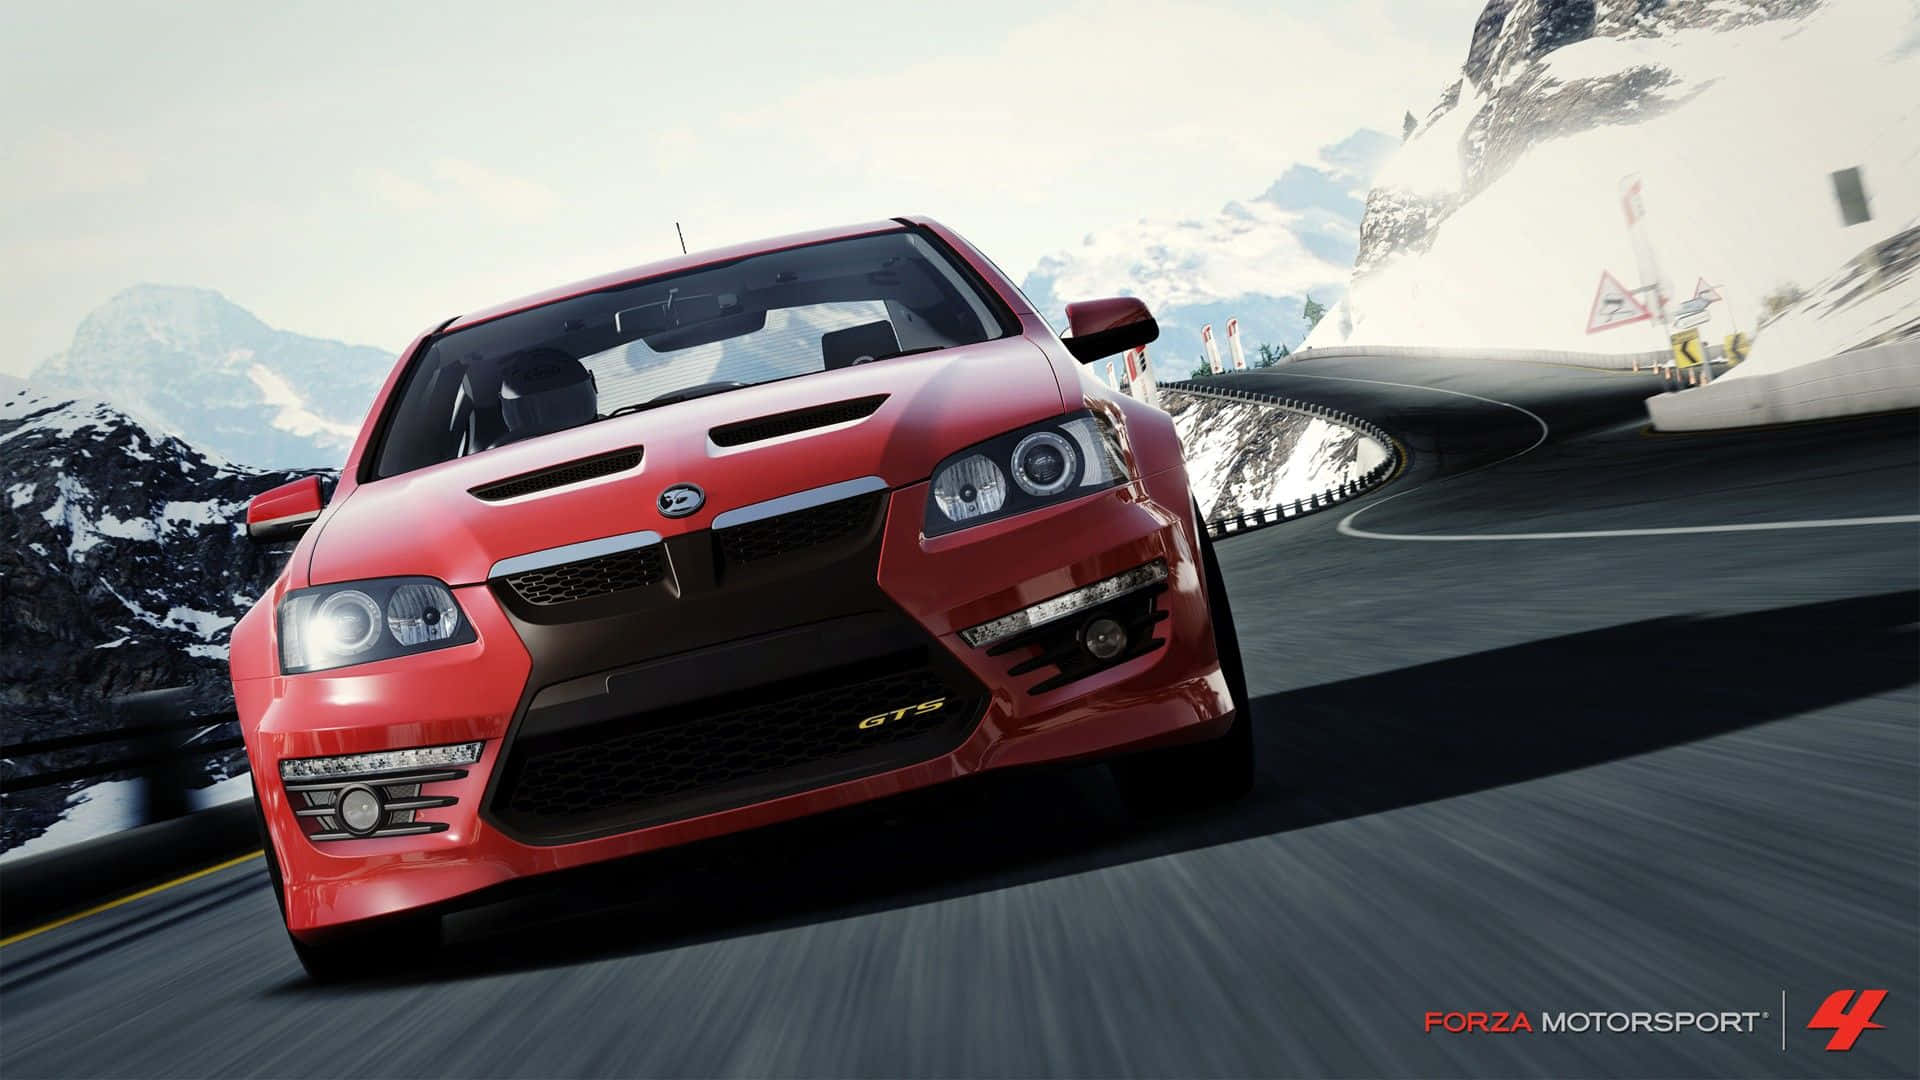 Forza Motorsport 4 HSV GTS viser realistisk kørsel. Wallpaper